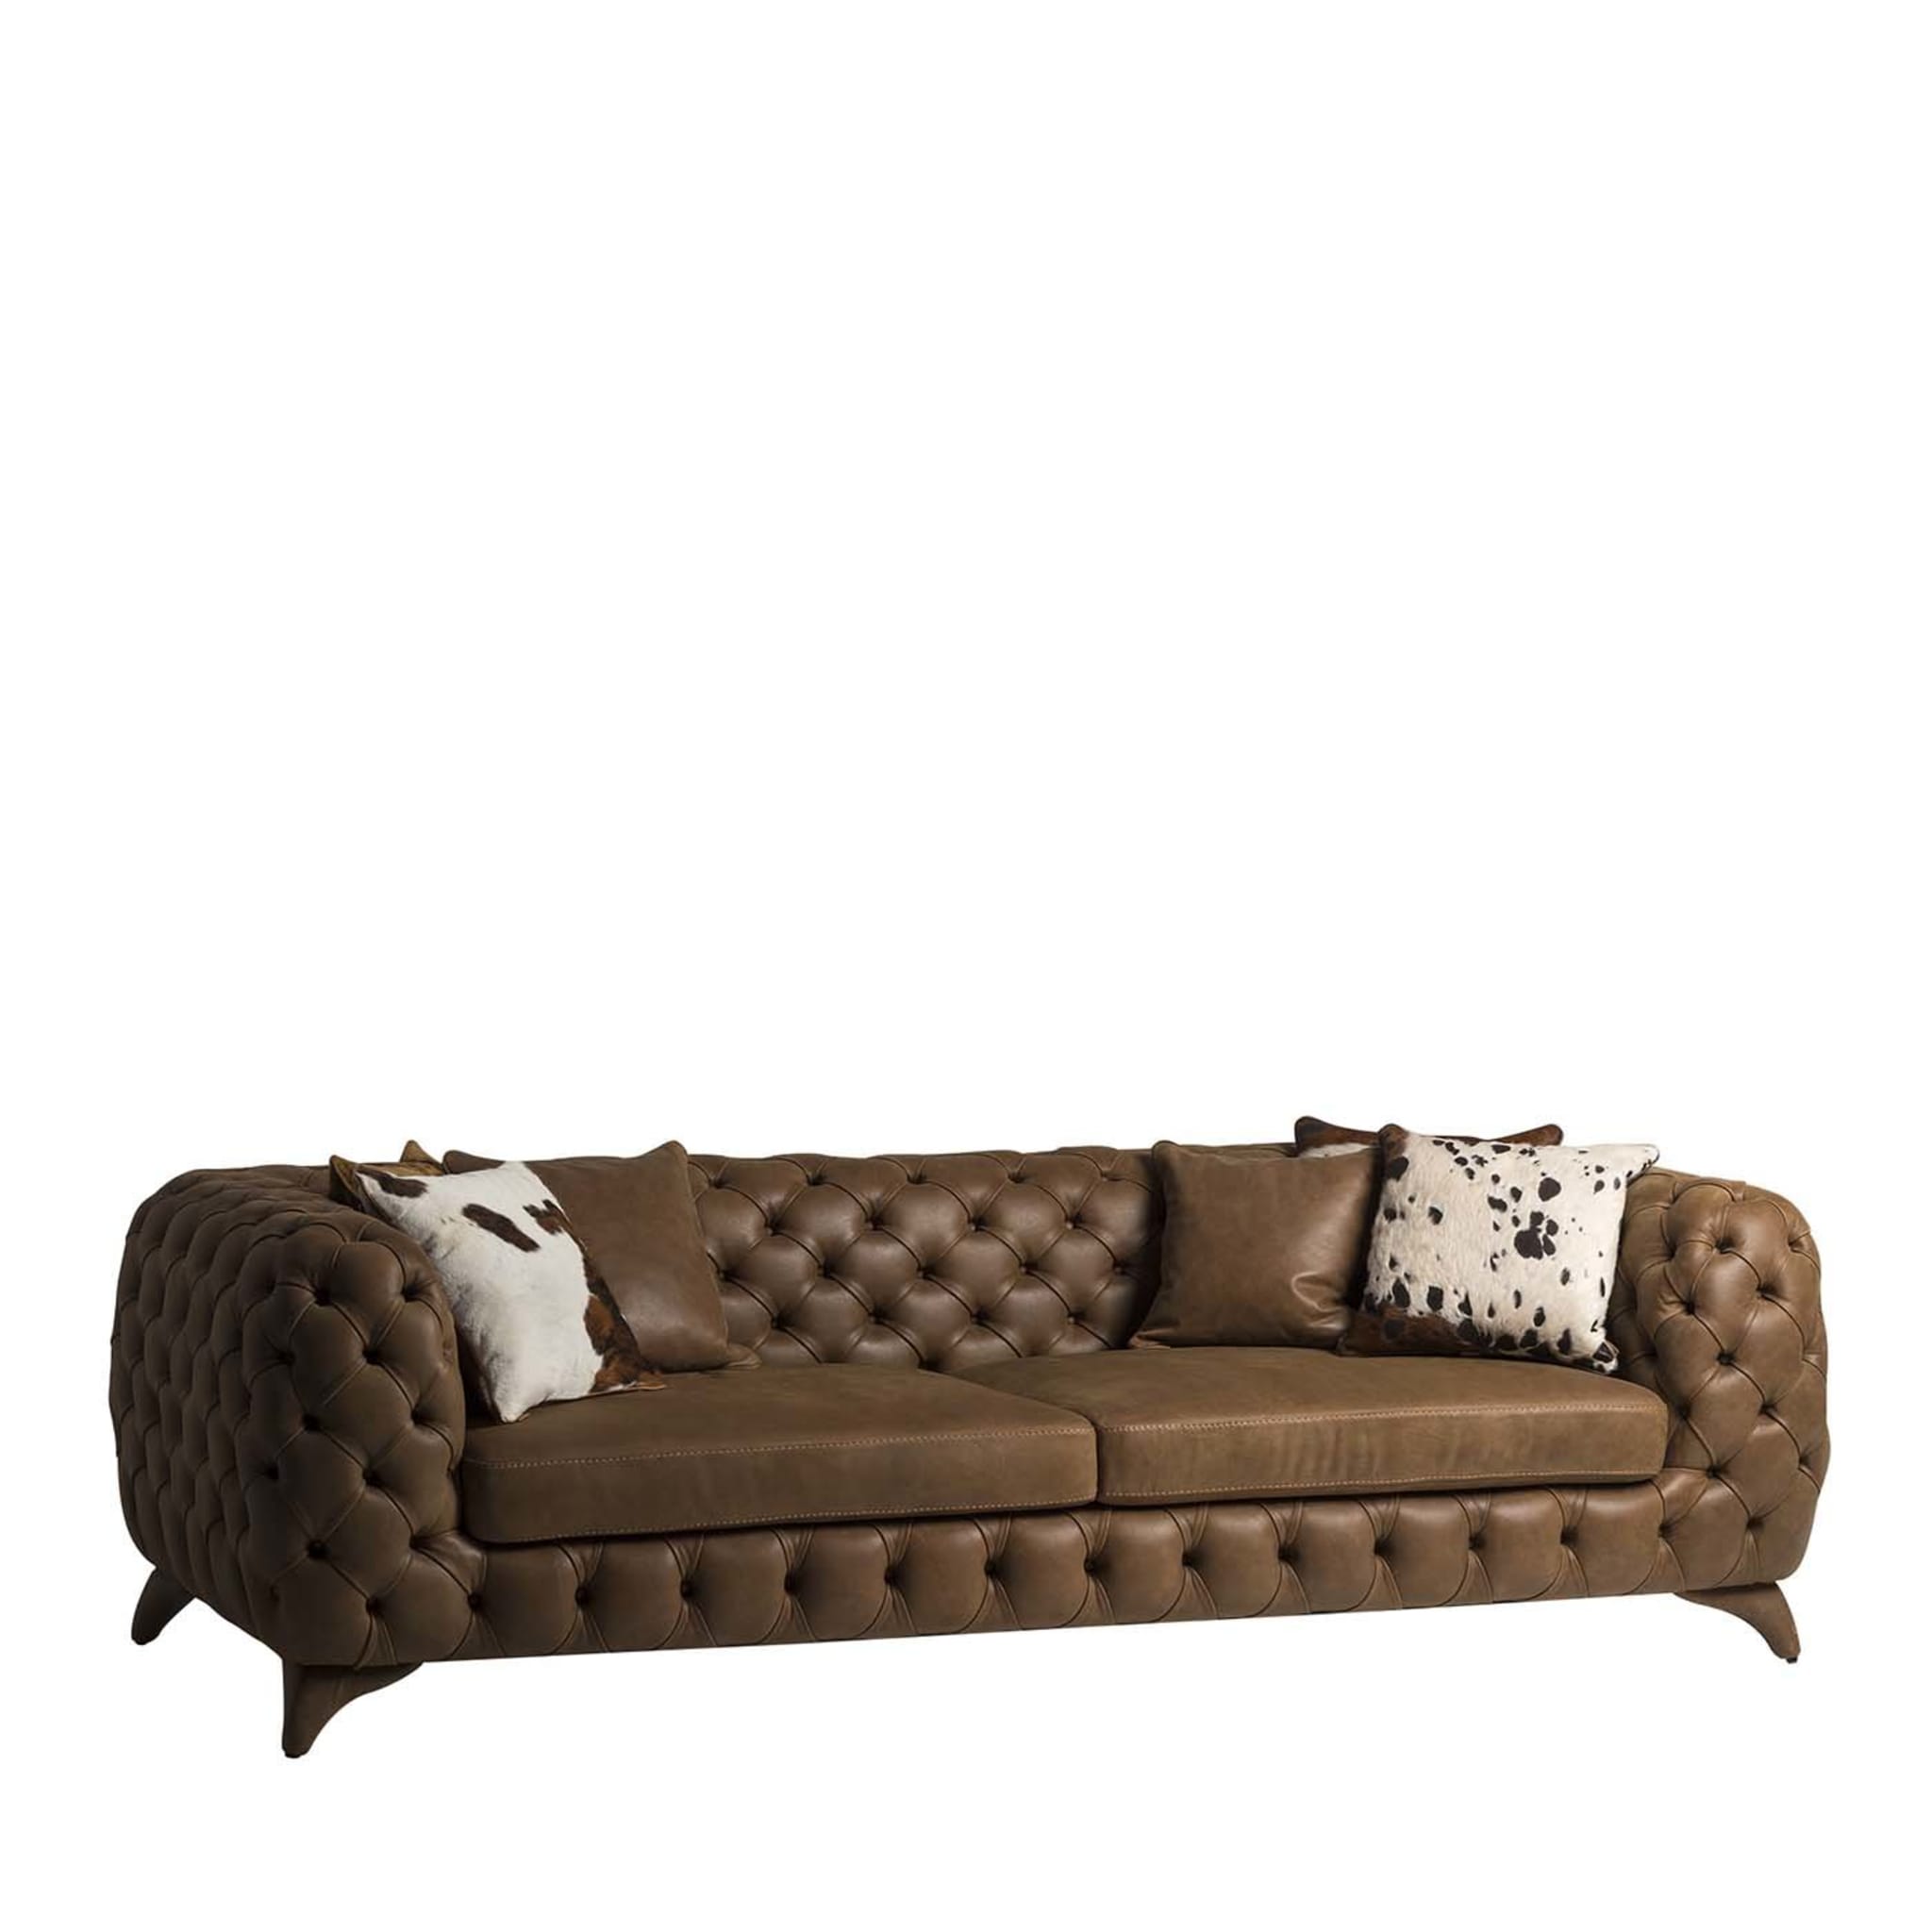 Isidoro 3-Sitzer Sofa Tribeca Kollektion von Marco und Giulio Mantellassi - Hauptansicht